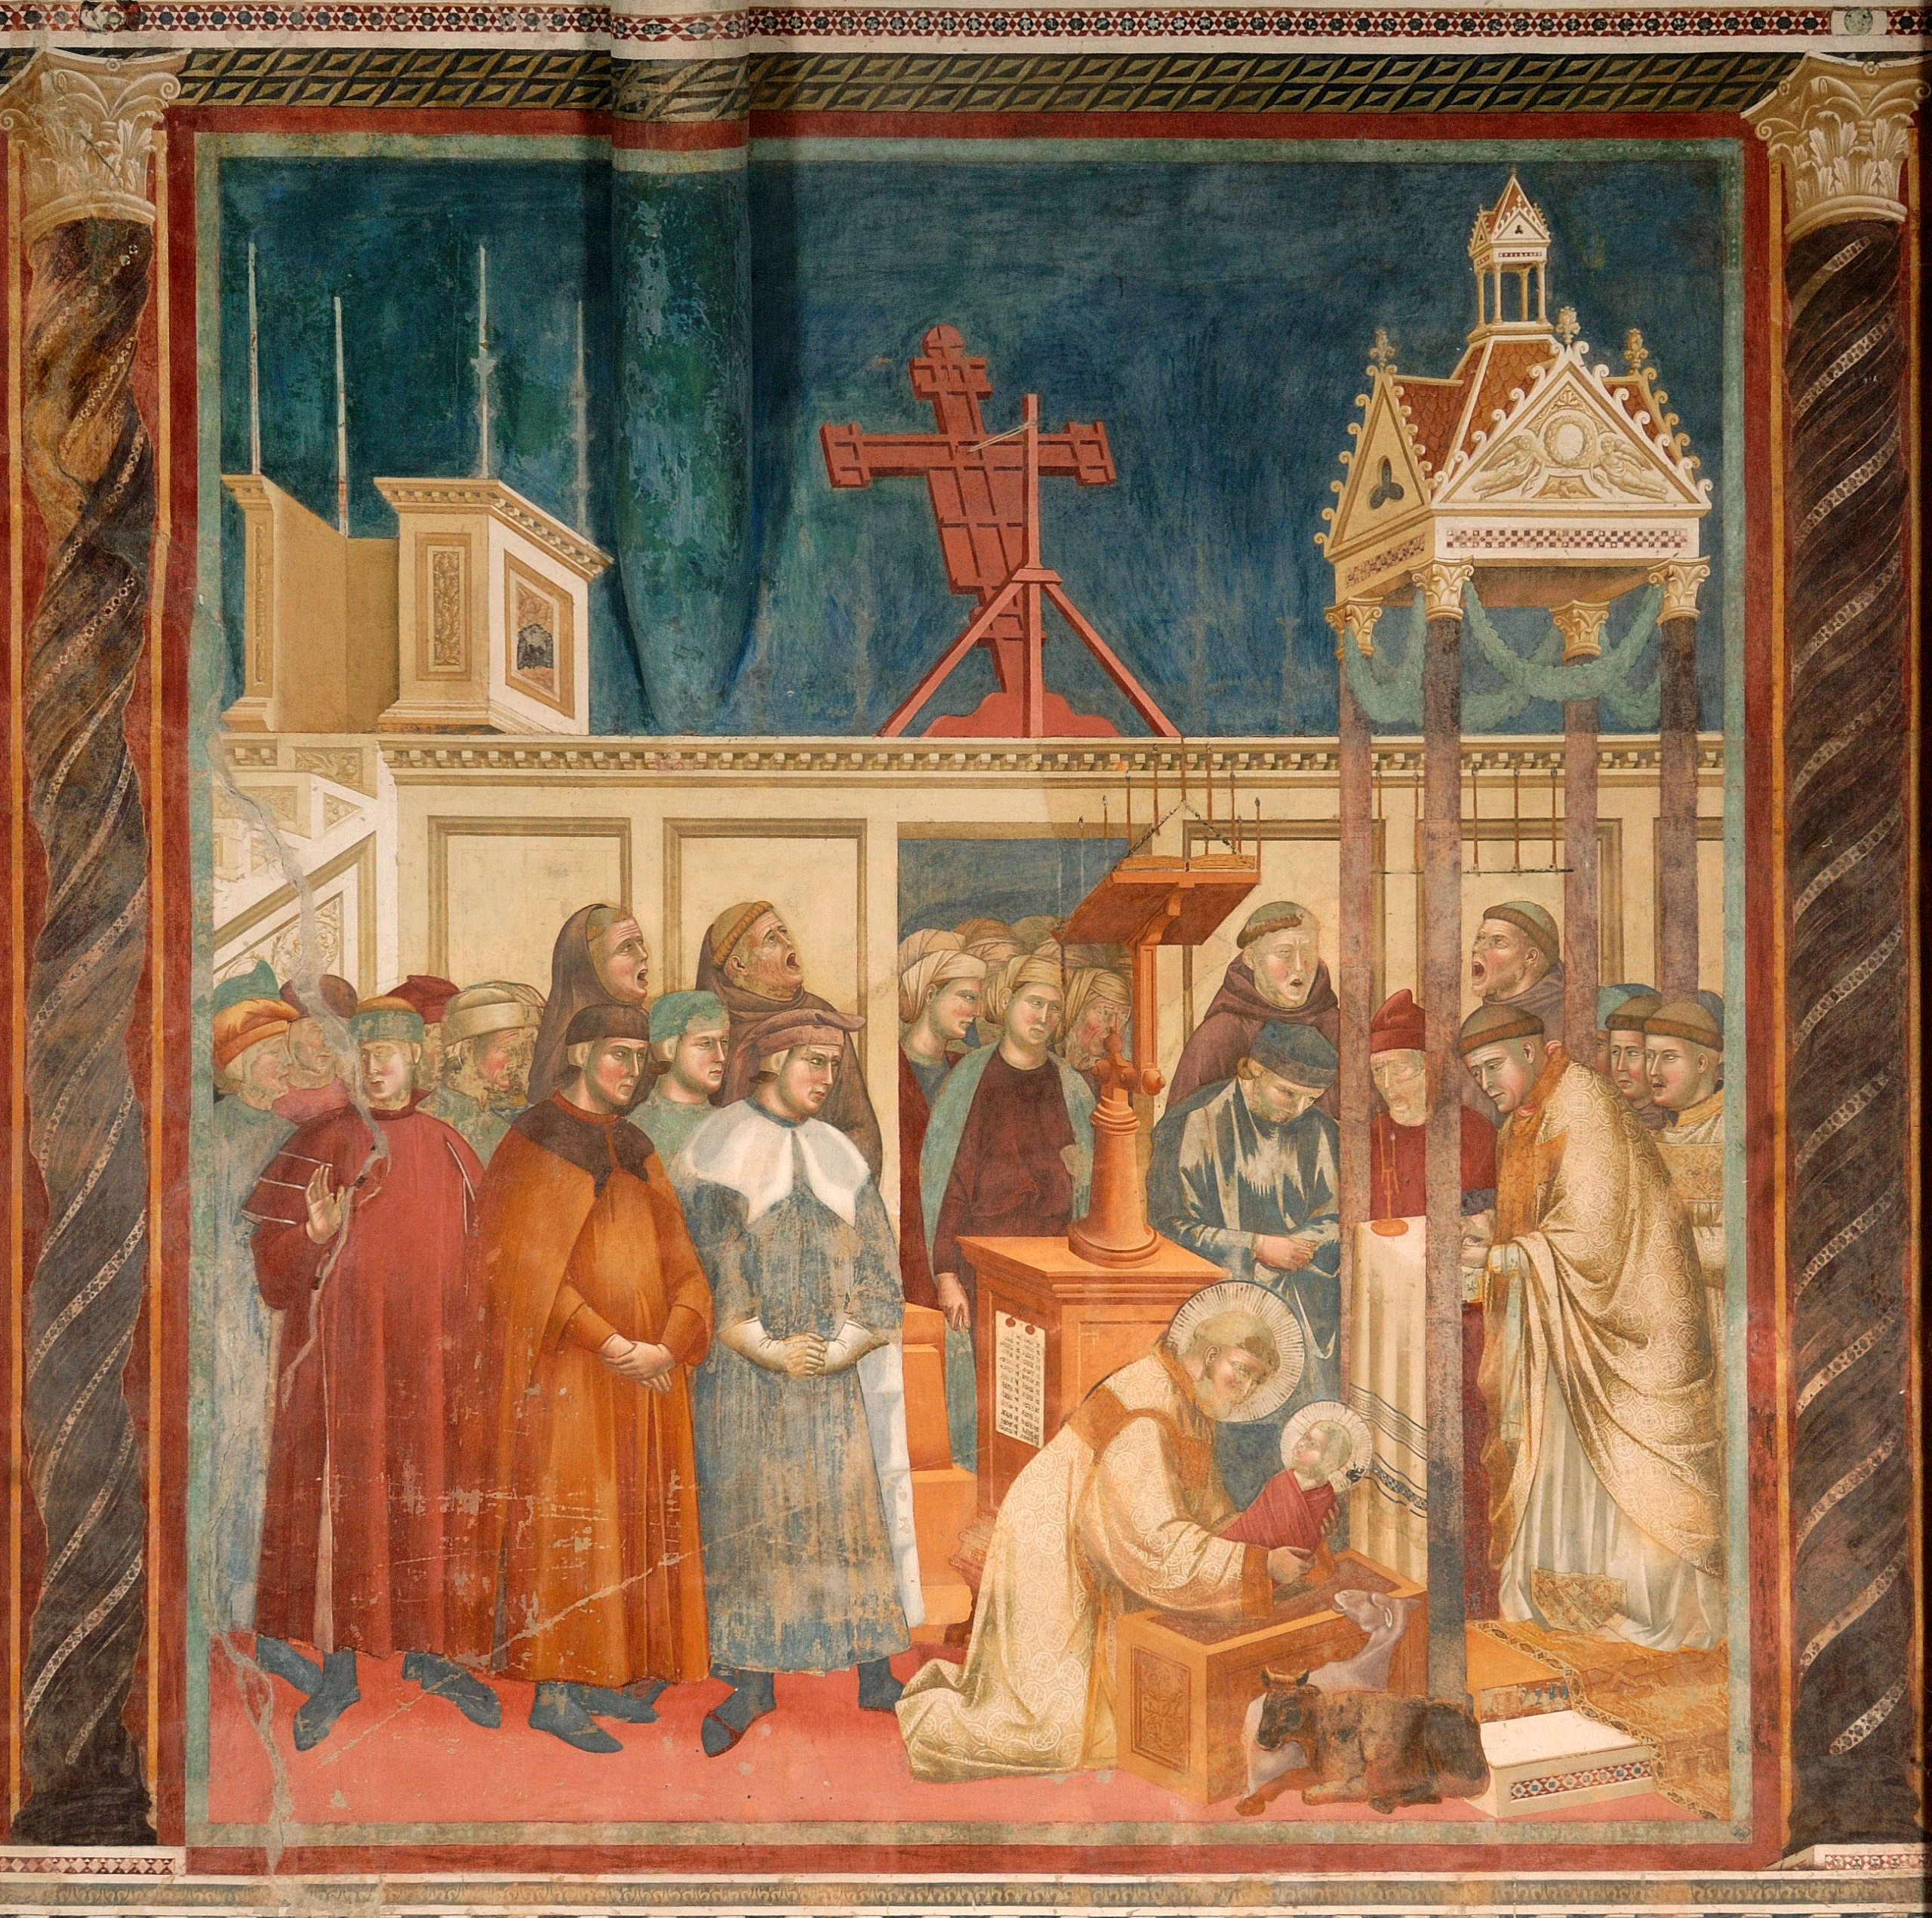 Giotto, Greccio Nativity (ca. 1295-1299; fresco, 230 x 270 cm; Assisi, Upper Basilica of St. Francis)